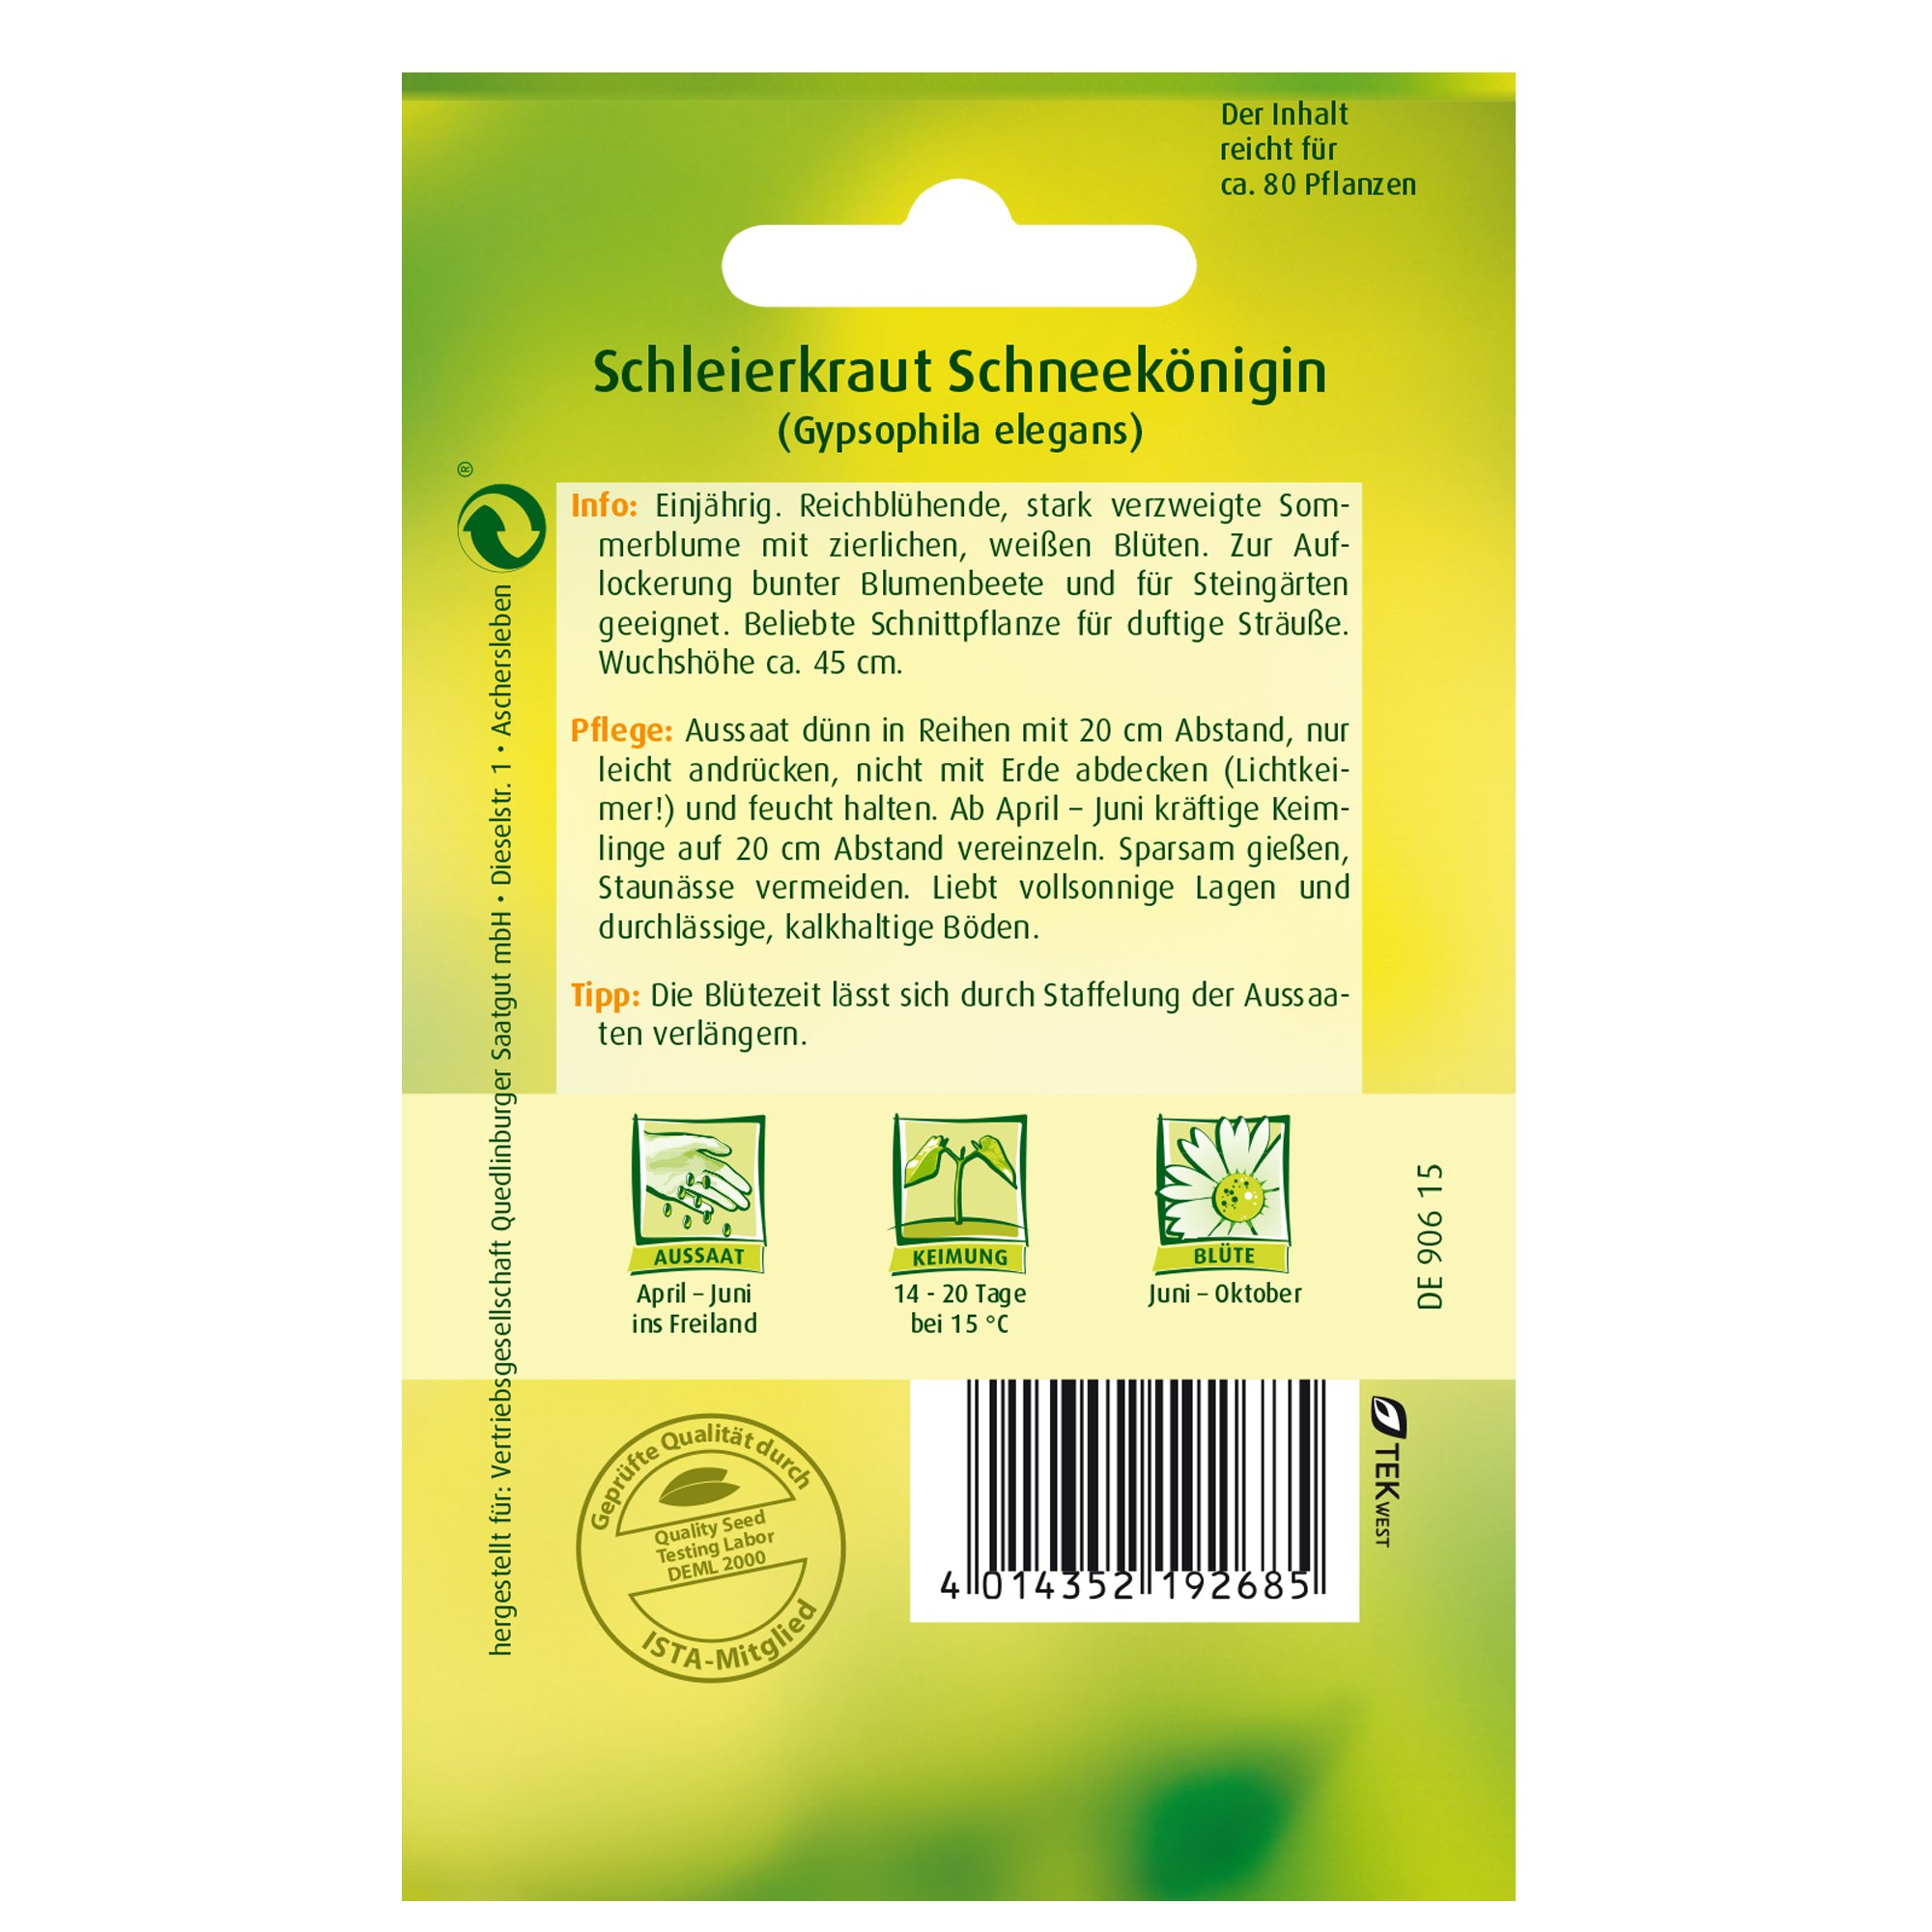 Schleierkraut 'Schneekönigin' + product picture